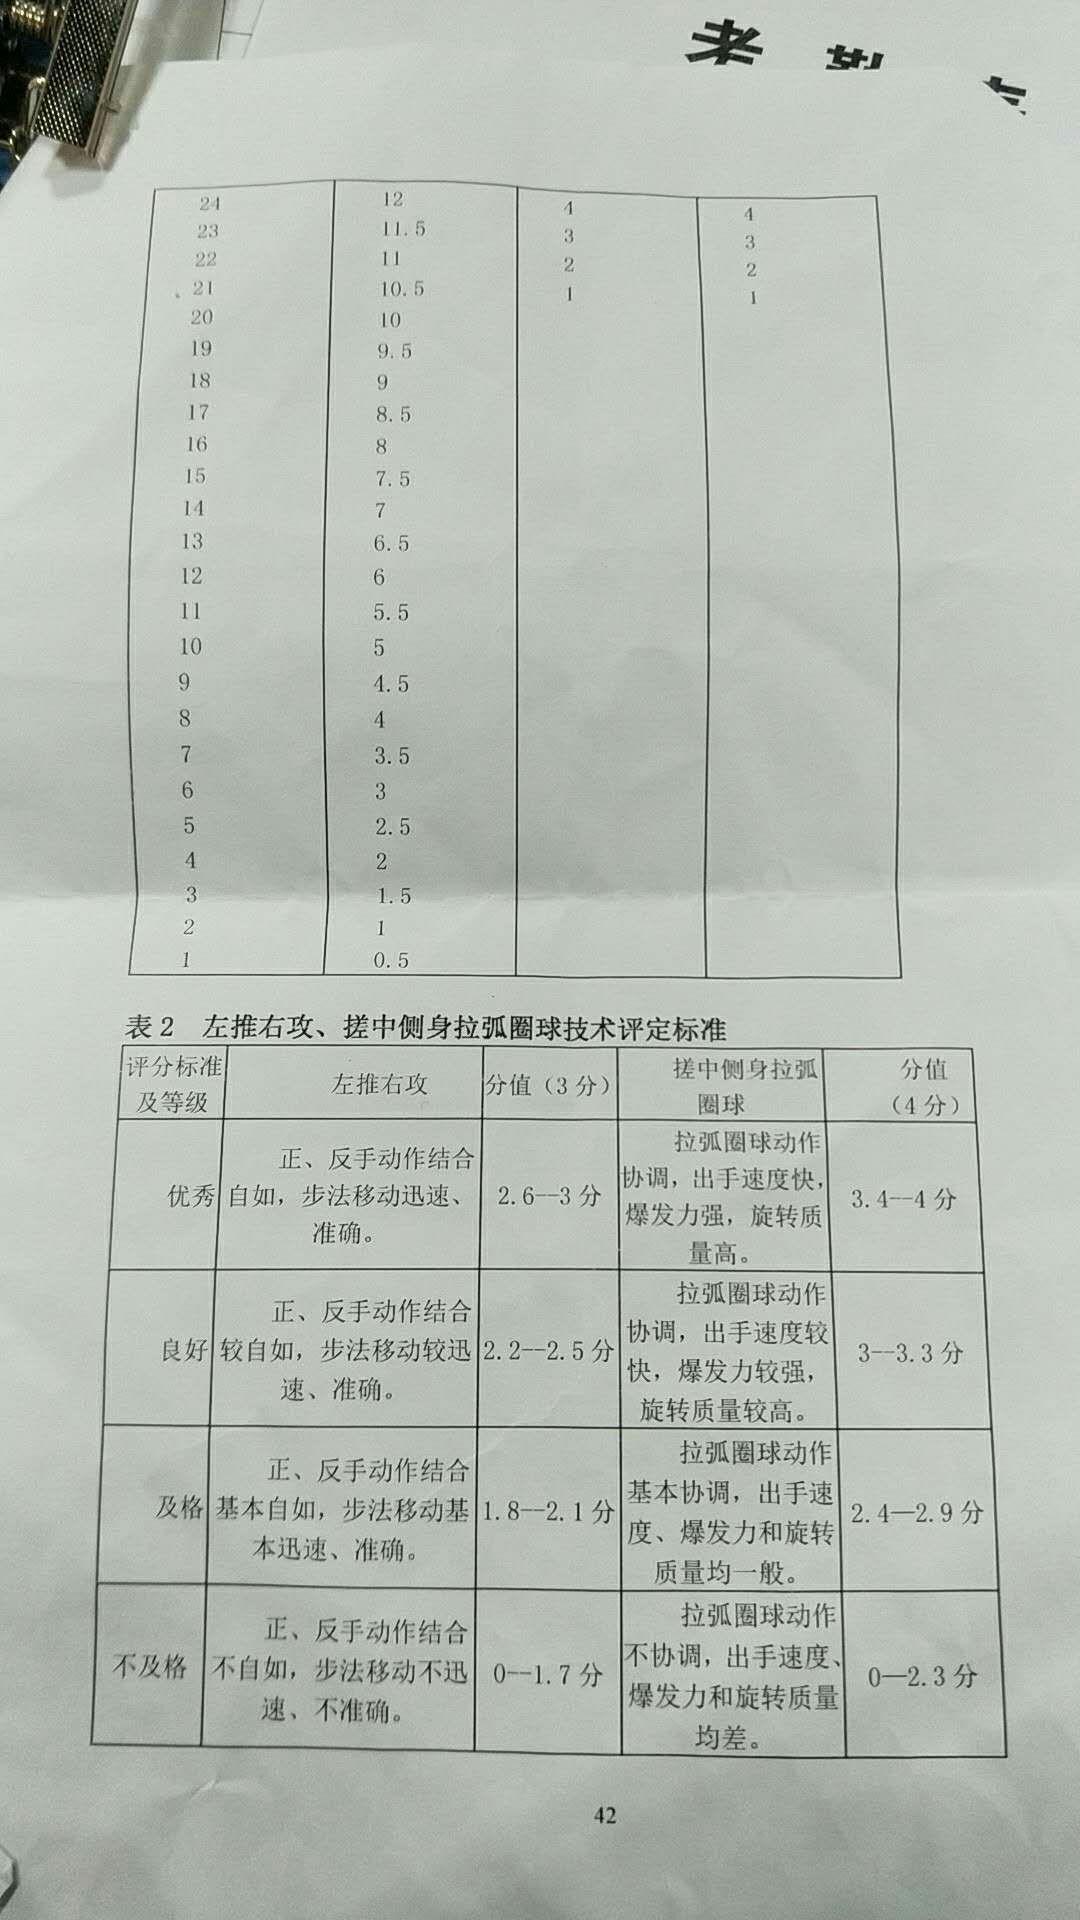 四川省高考体育生的专项乒乓球的内容和评分标